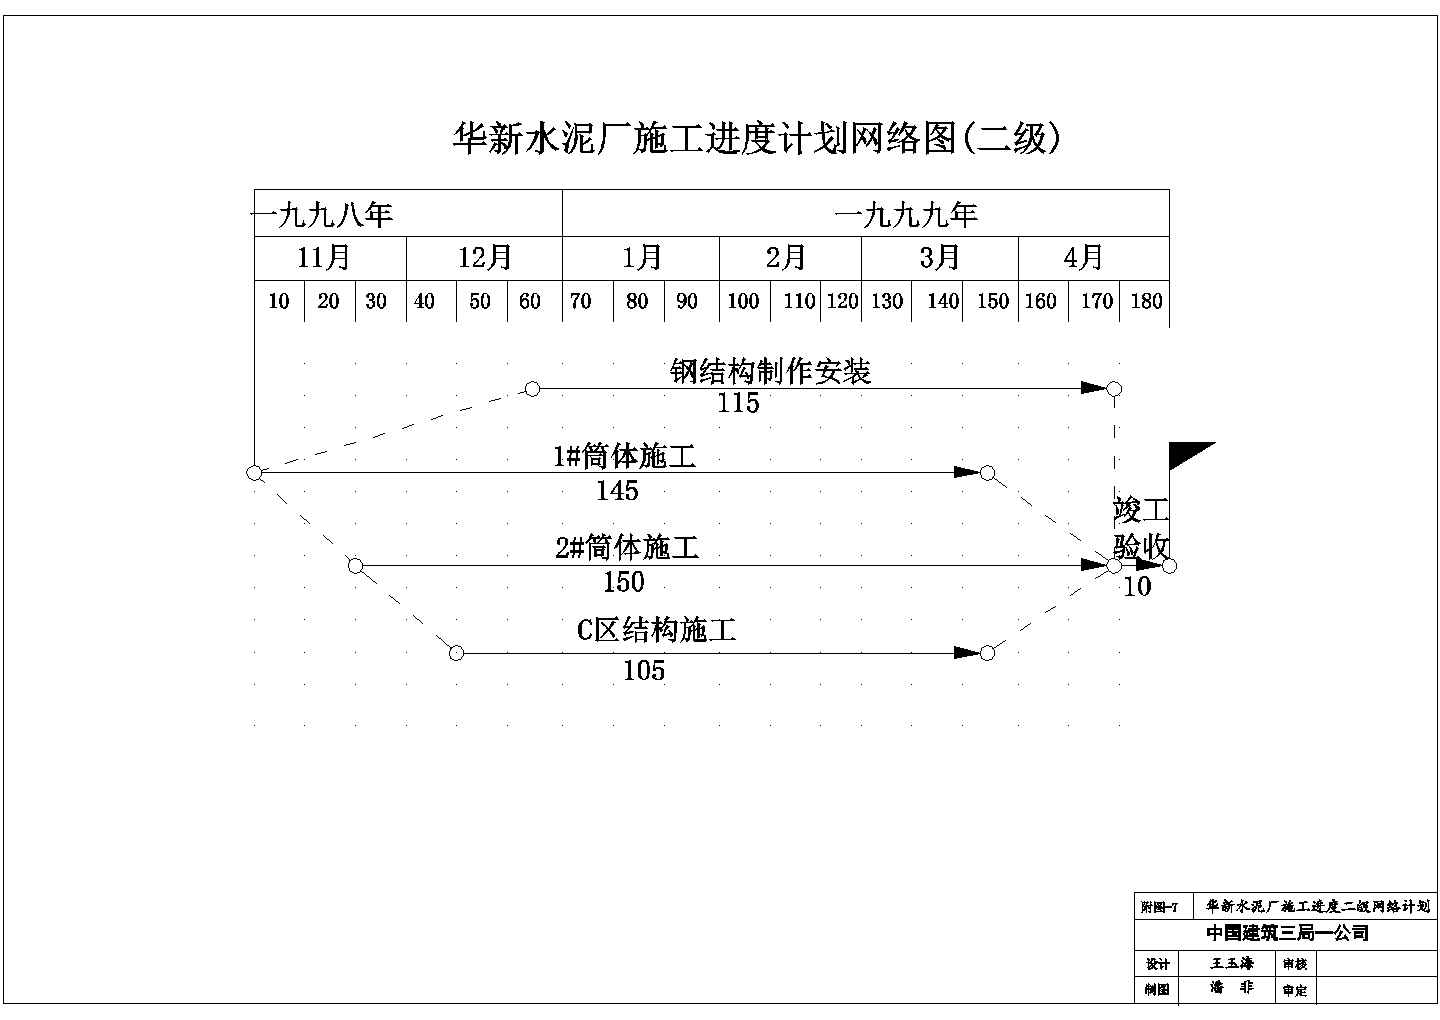 华新水泥厂施工进度计划网络图（二级）